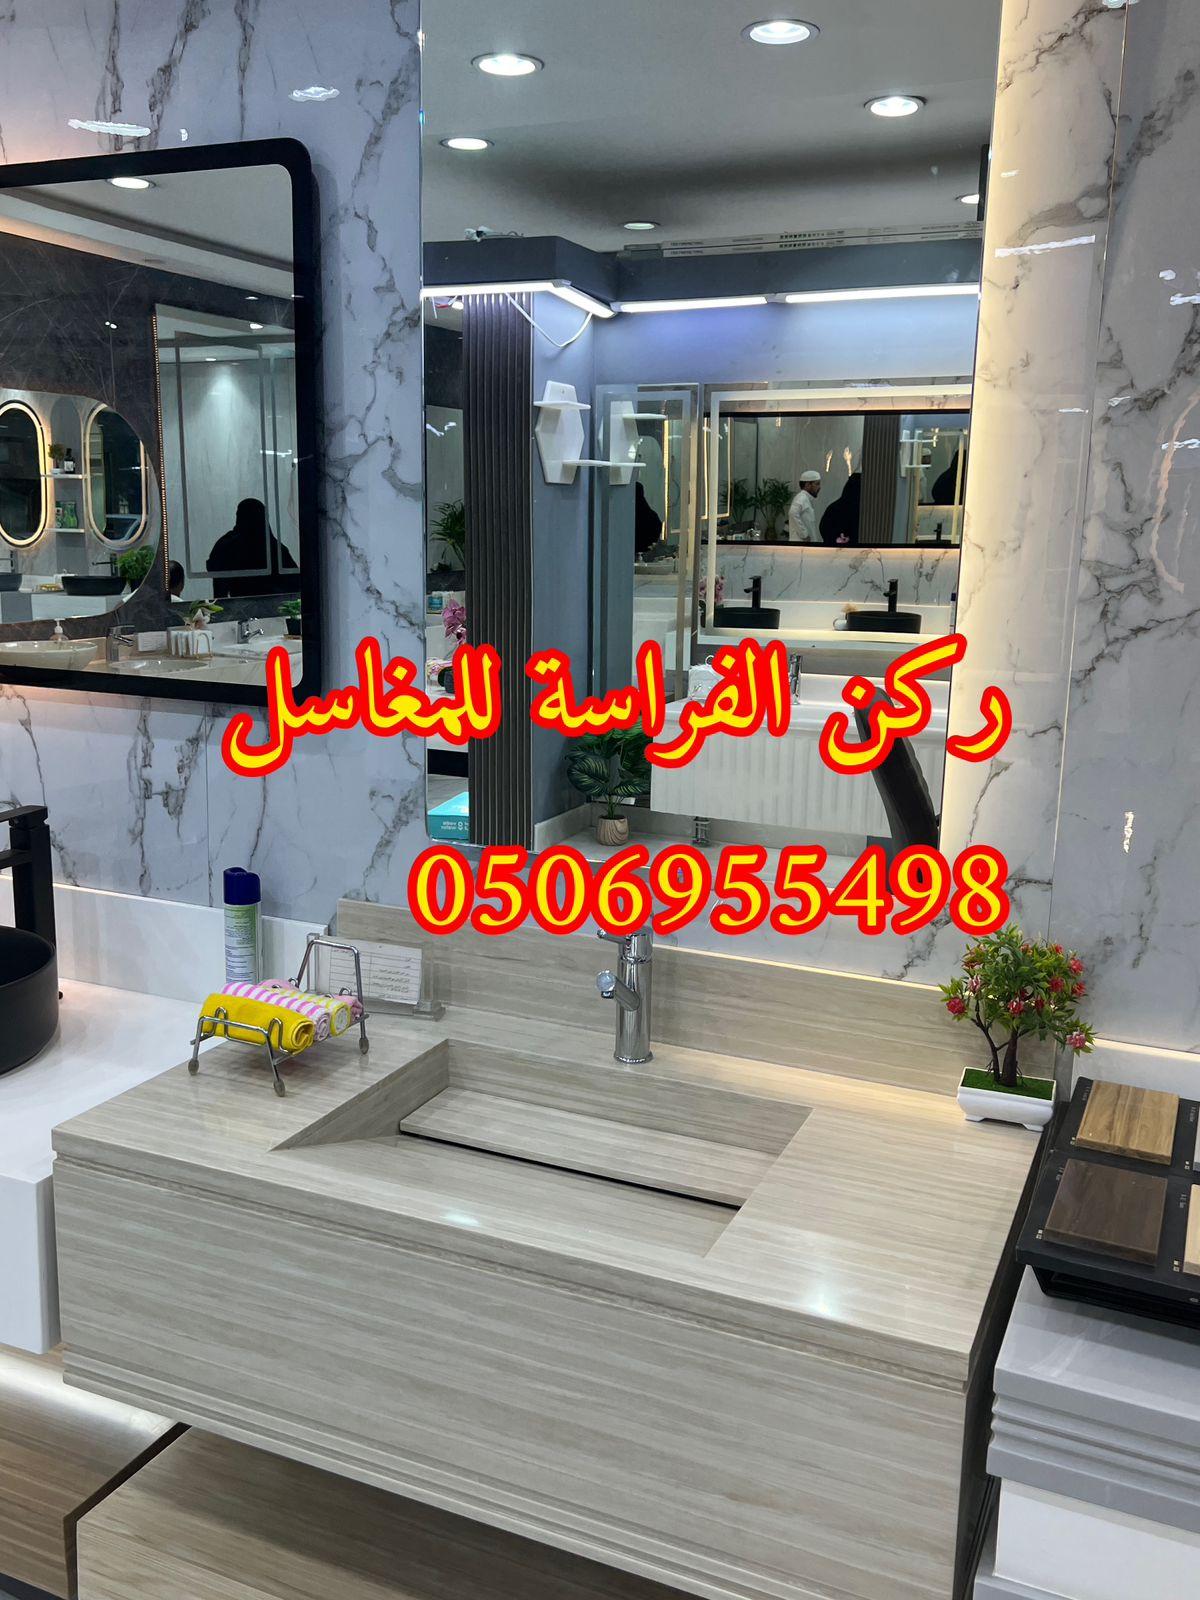 الرياض - تفصيل ديكورات مغاسل حمامات رخام في الرياض,0506955498 662784414